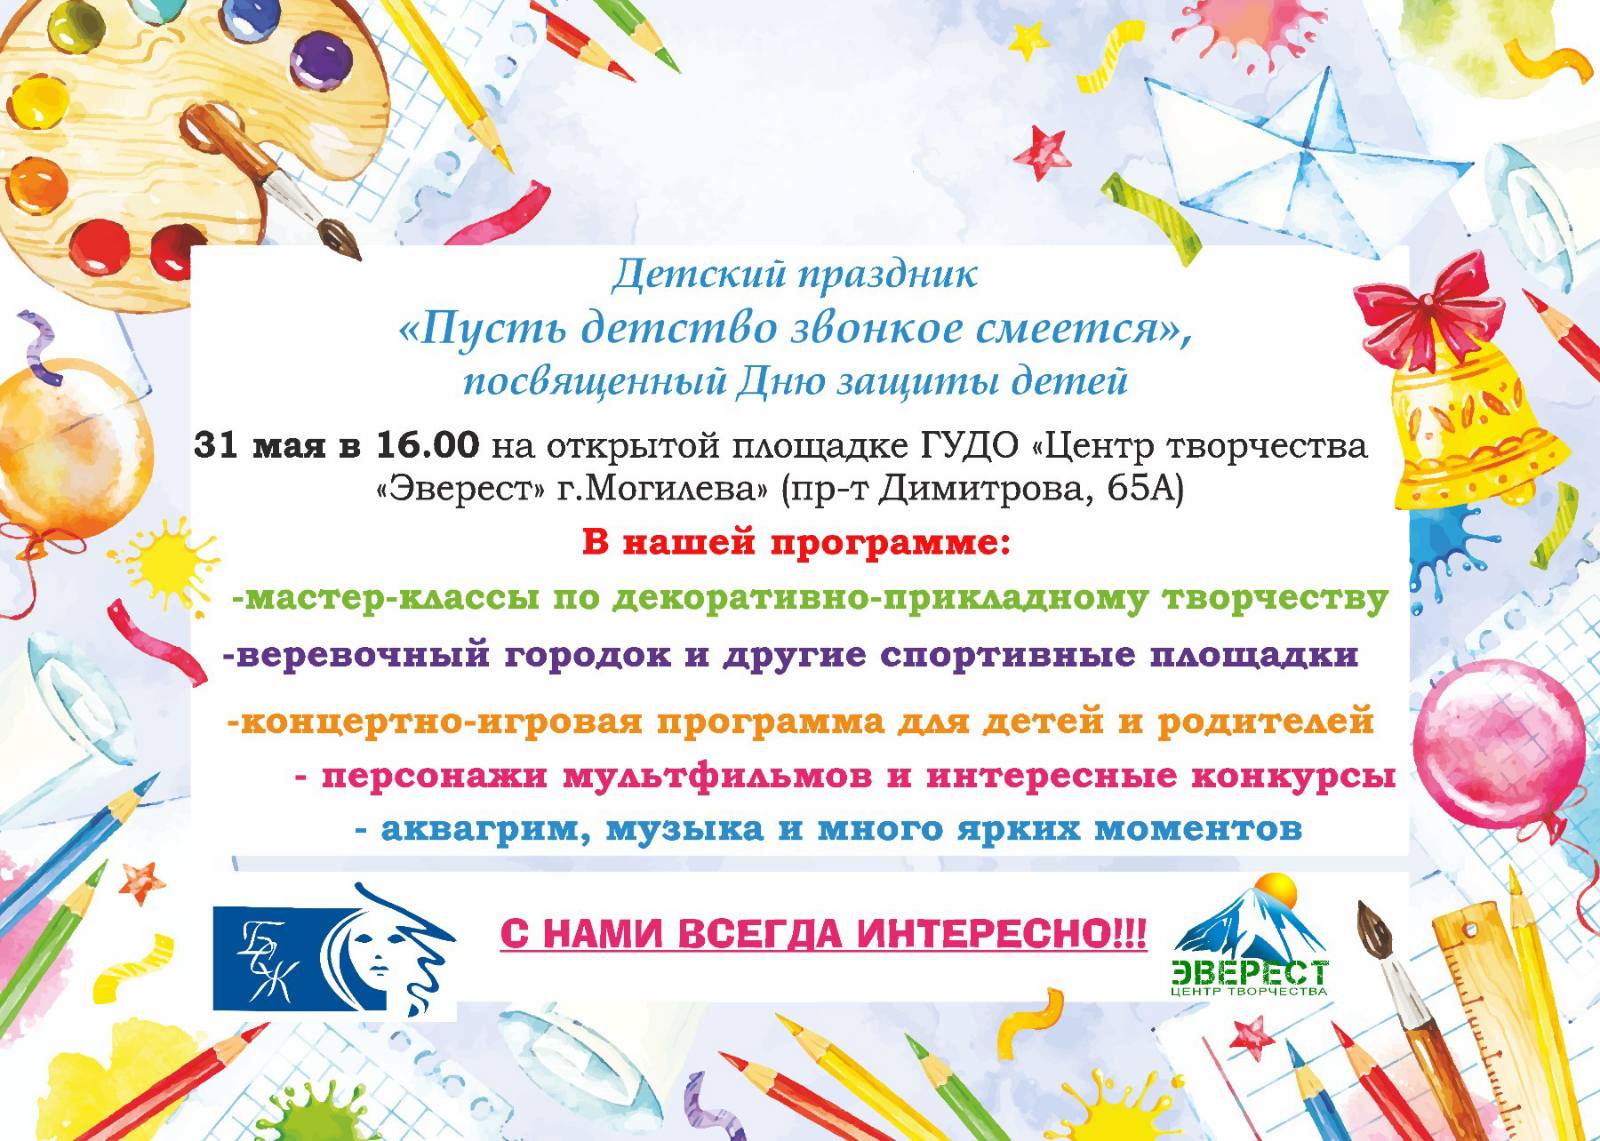 «Пусть детство звонкое смеется»: детский праздник пройдет в Могилеве 31 мая